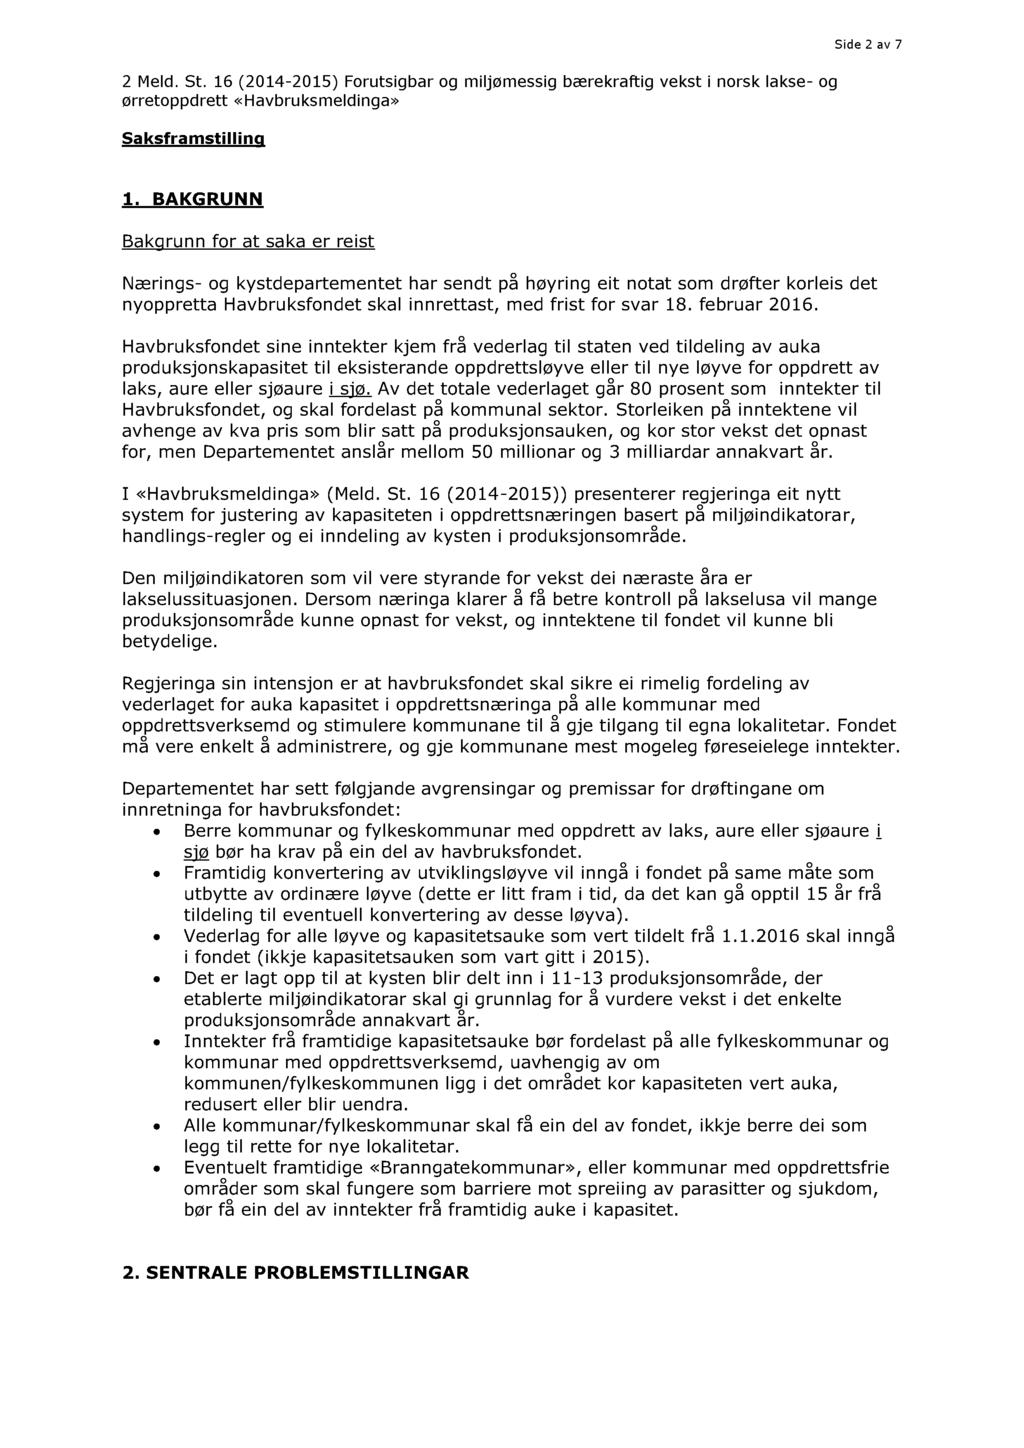 Side 2 av 7 2 Meld. St. 16 (2014-2015) Forutsigbar og miljømessig bærekraftig vekst i norsk lakse - og ørretoppdrett «Havbruksmeldinga» Saksframstilling 1.